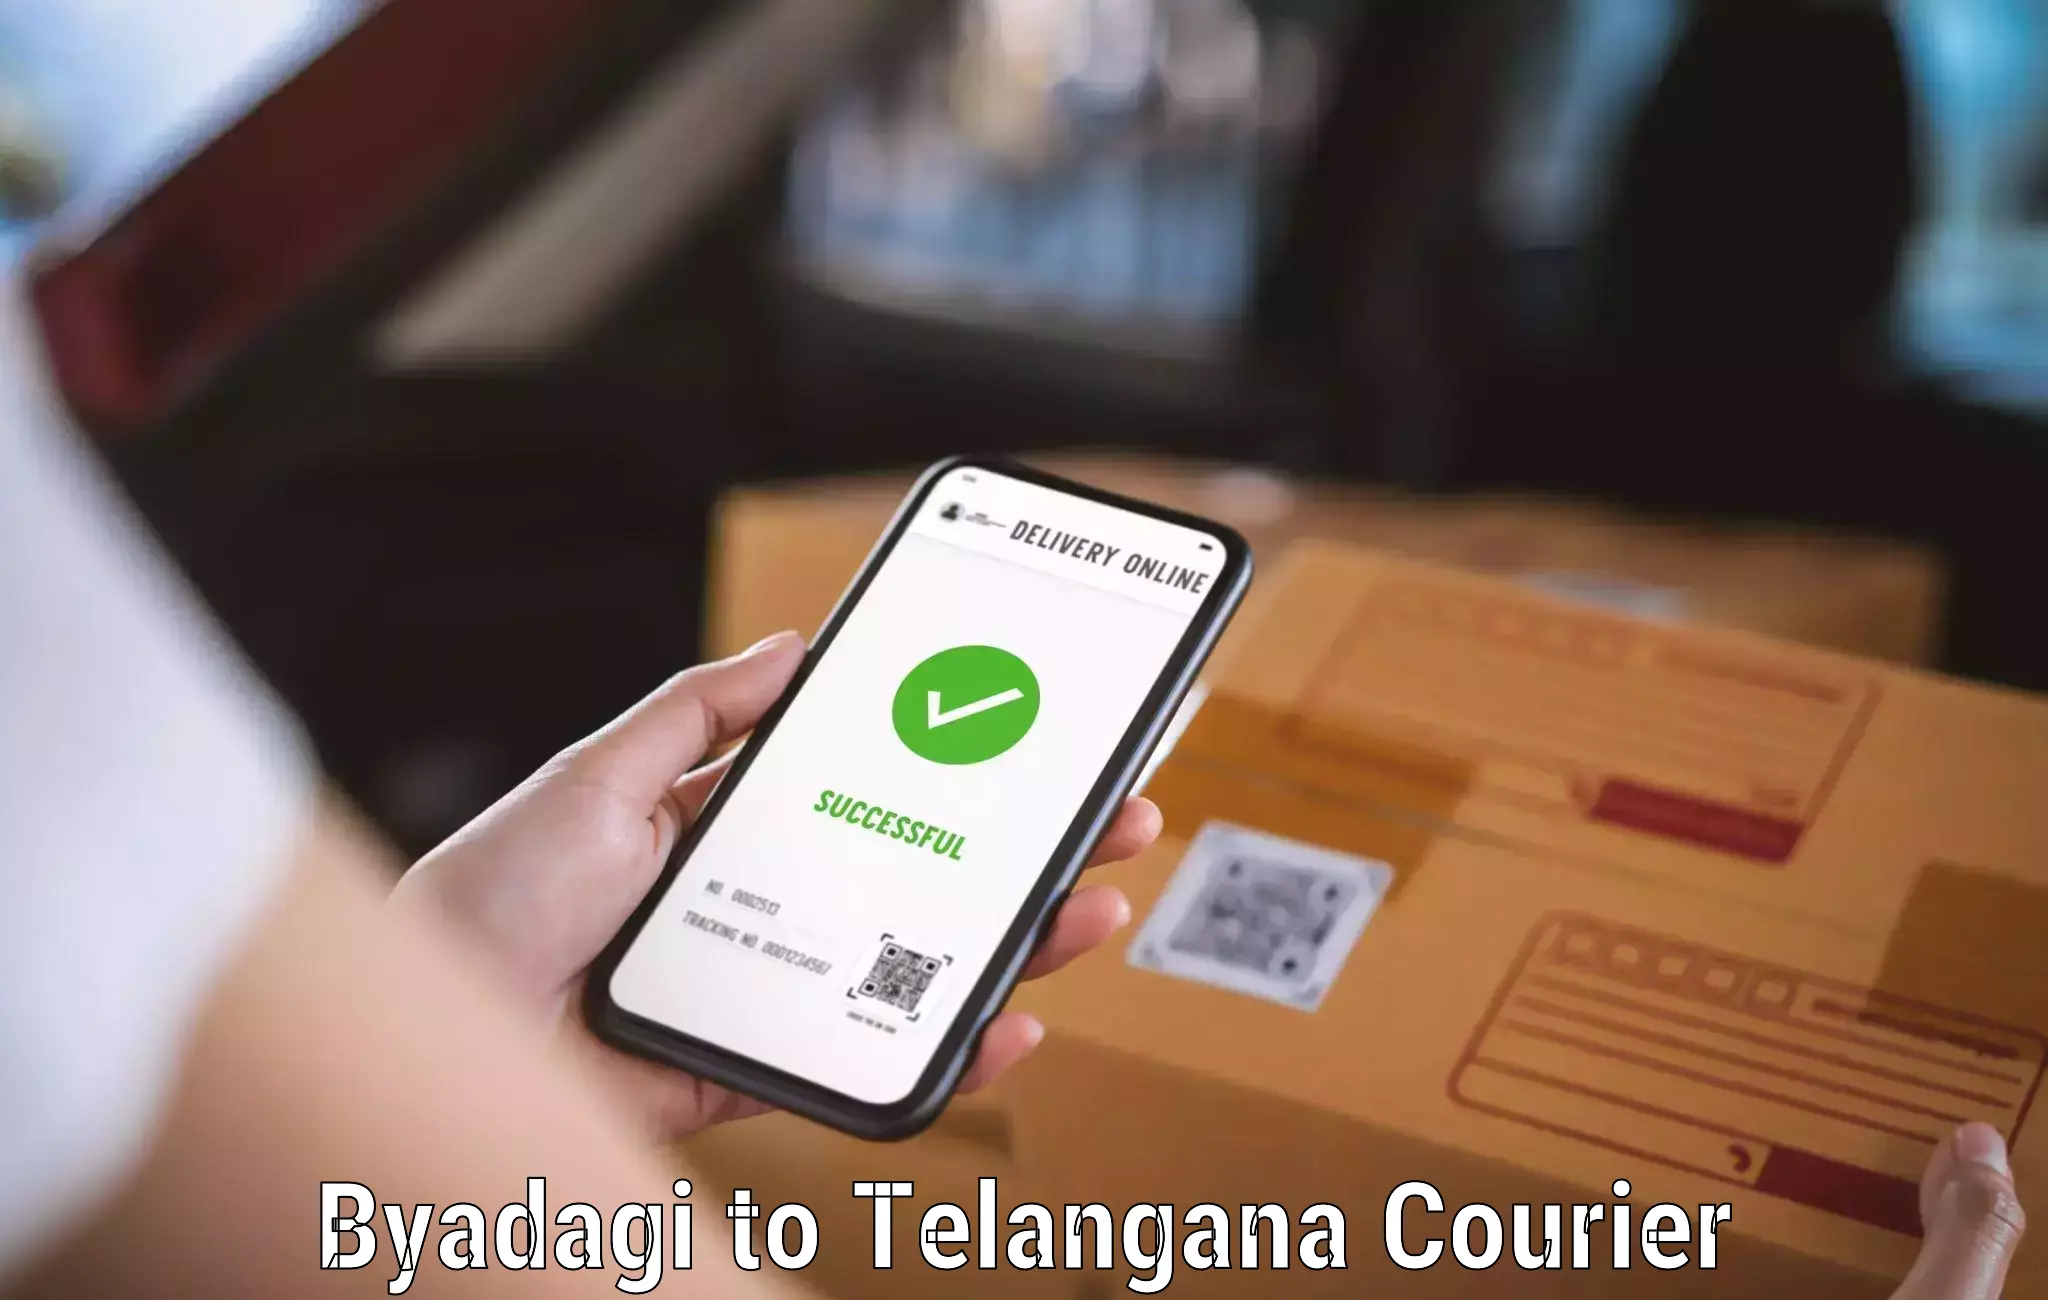 Customizable shipping options Byadagi to Sikanderguda